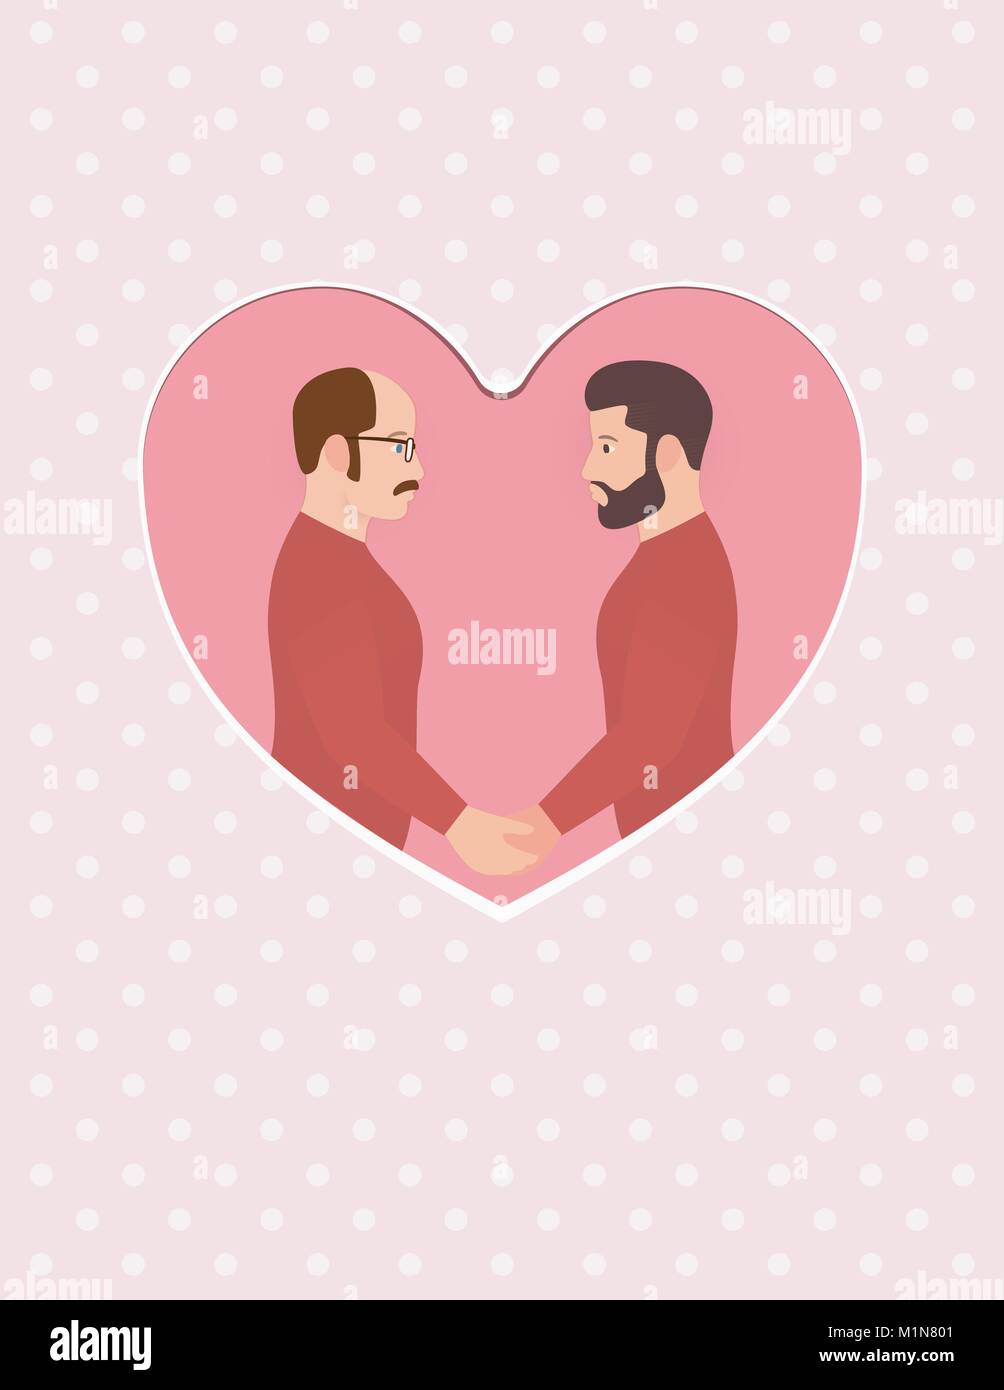 Zwei Männer, Multirassischen homosexuelles Paar in Liebe, halten sich an den Händen und schaut in die Augen. Grußkarte für Happy Valentinstag, Verlobung oder Hochzeit oder Jubiläum. Stock Vektor